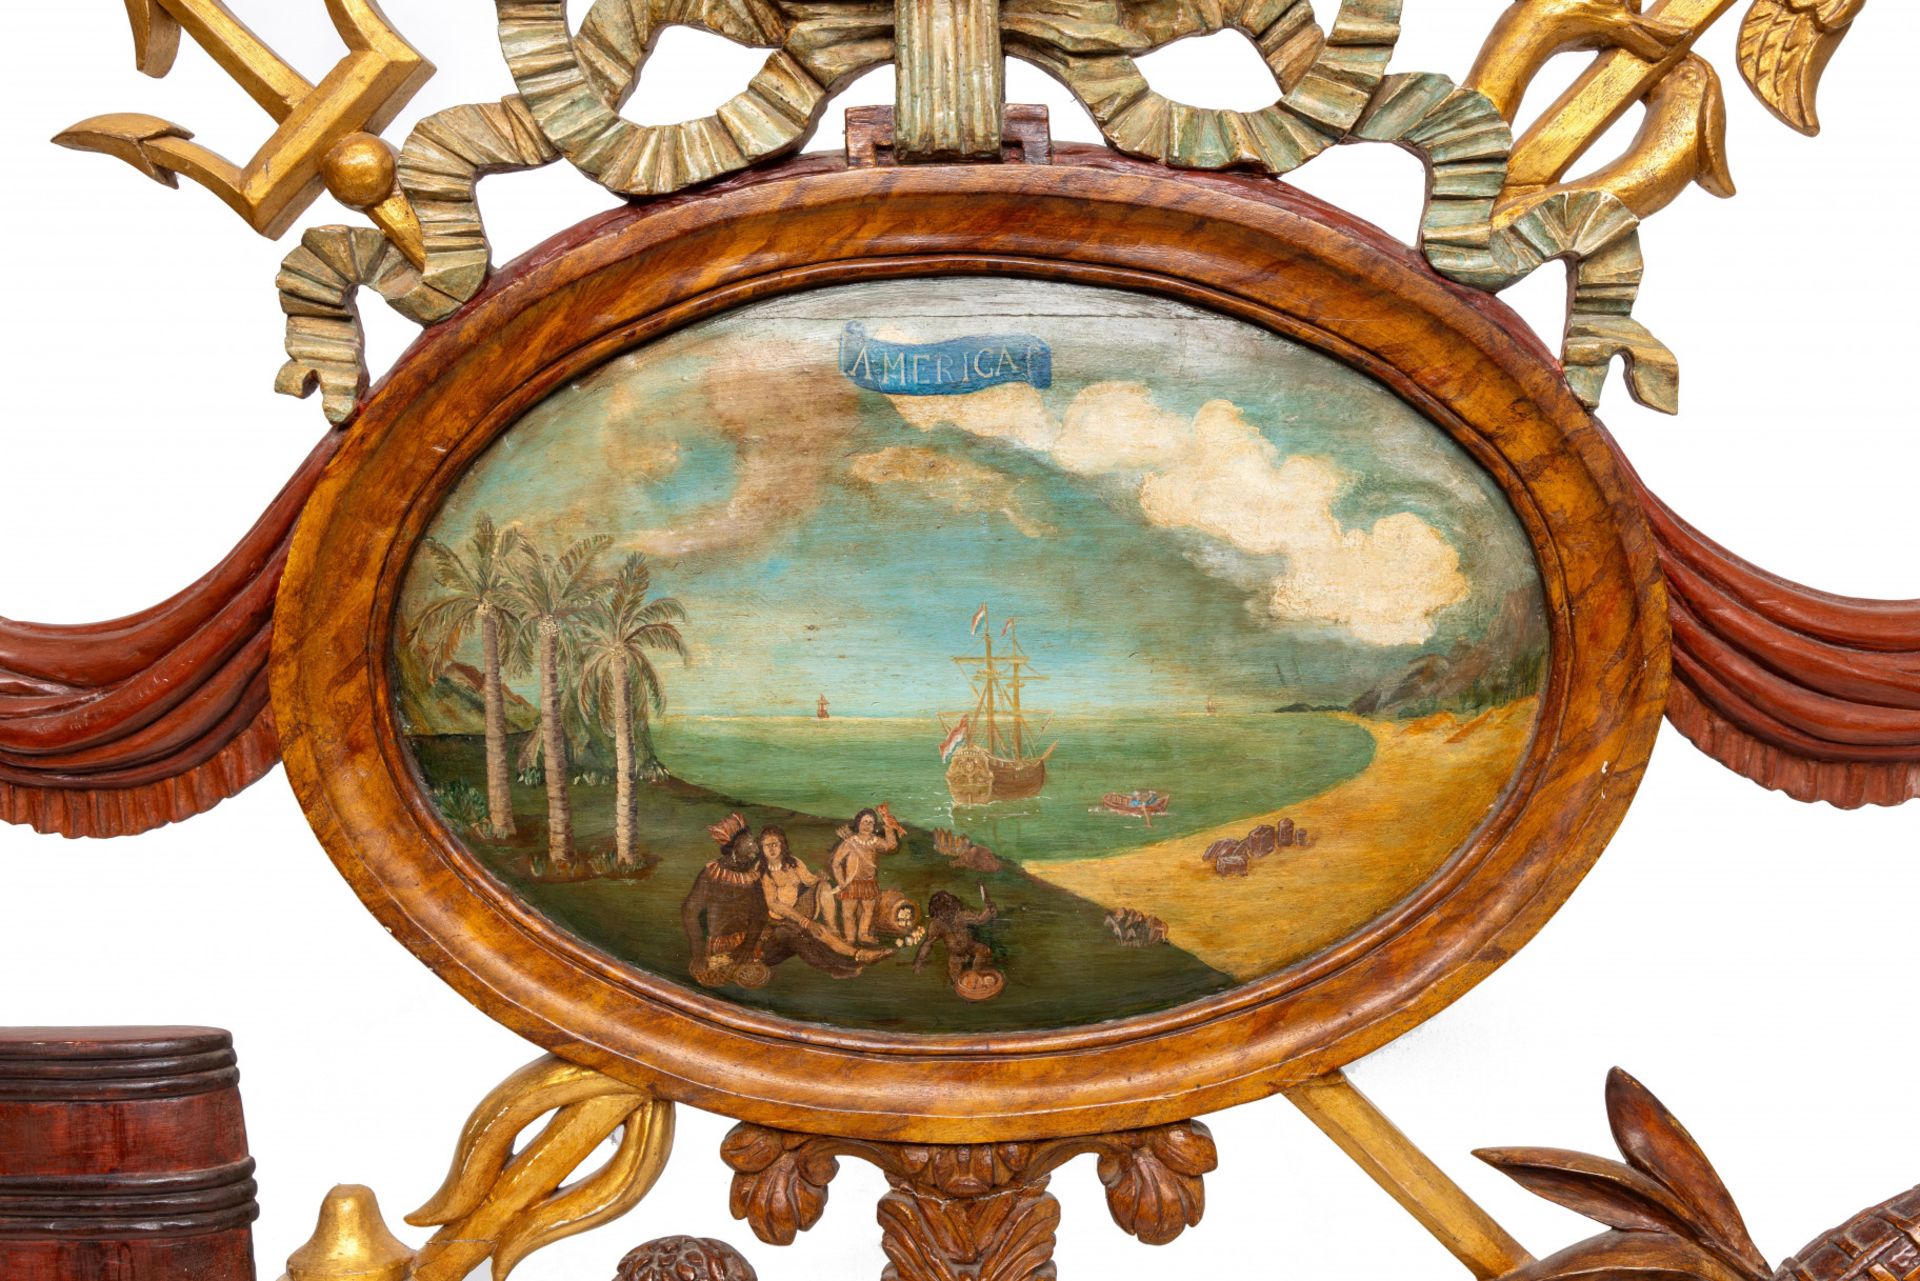 Holland, gestoken en polychroom geschilderd bovenlicht 'Allegorie op America', 18e eeuw; - Bild 3 aus 3